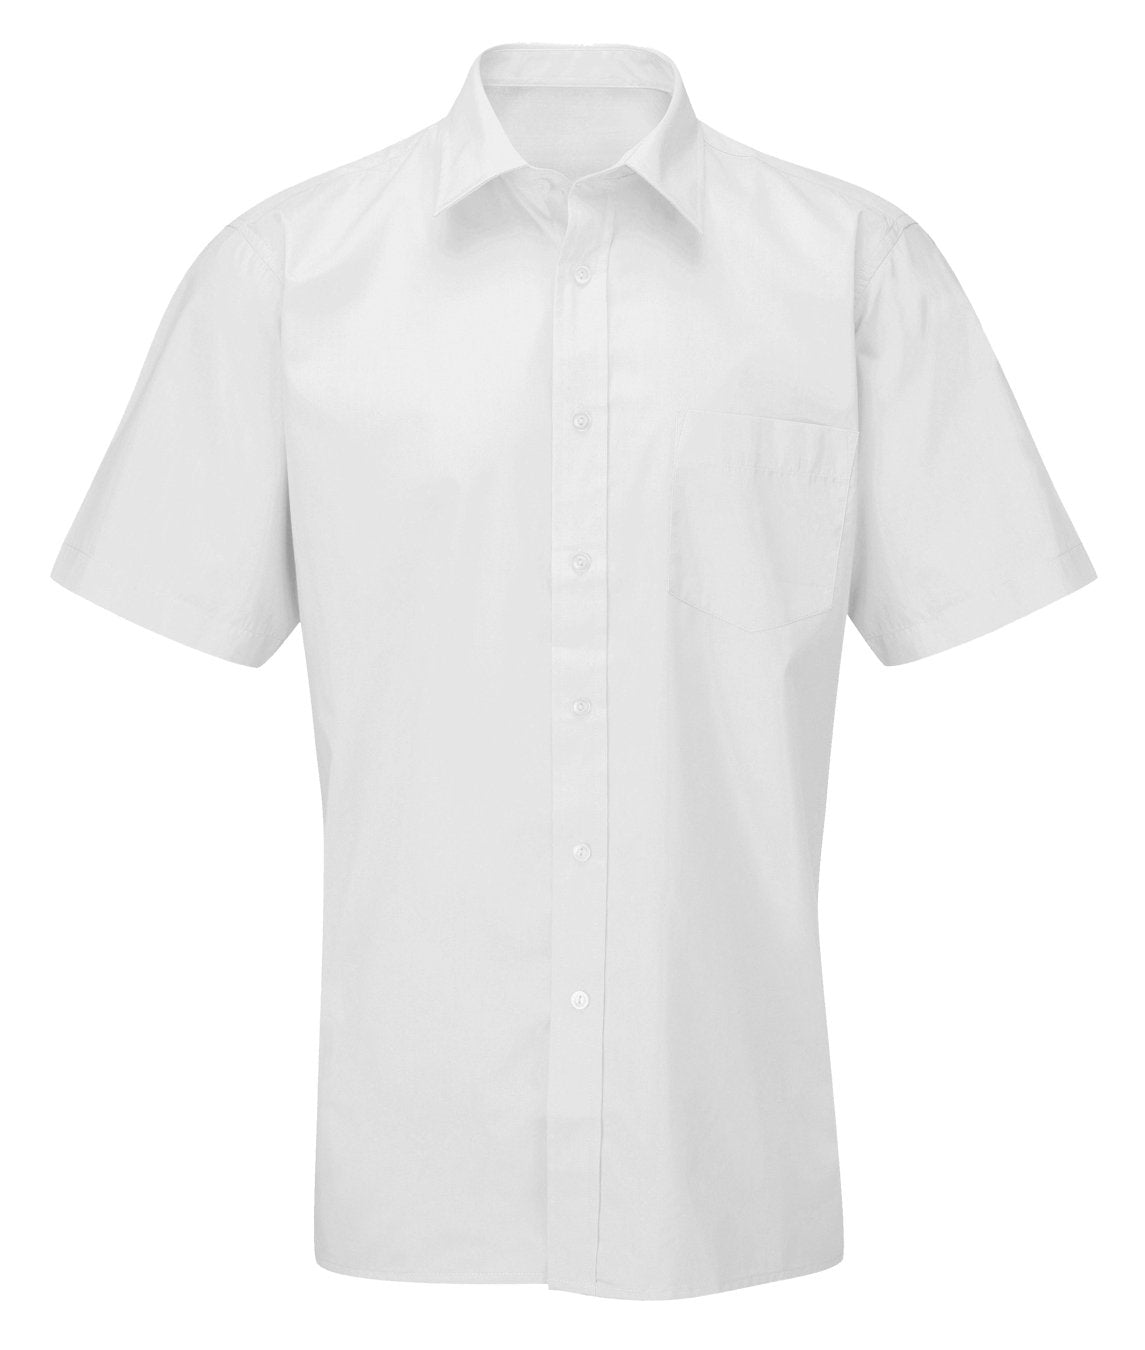 Men's Deluxe Work Shirt - Short Sleeve